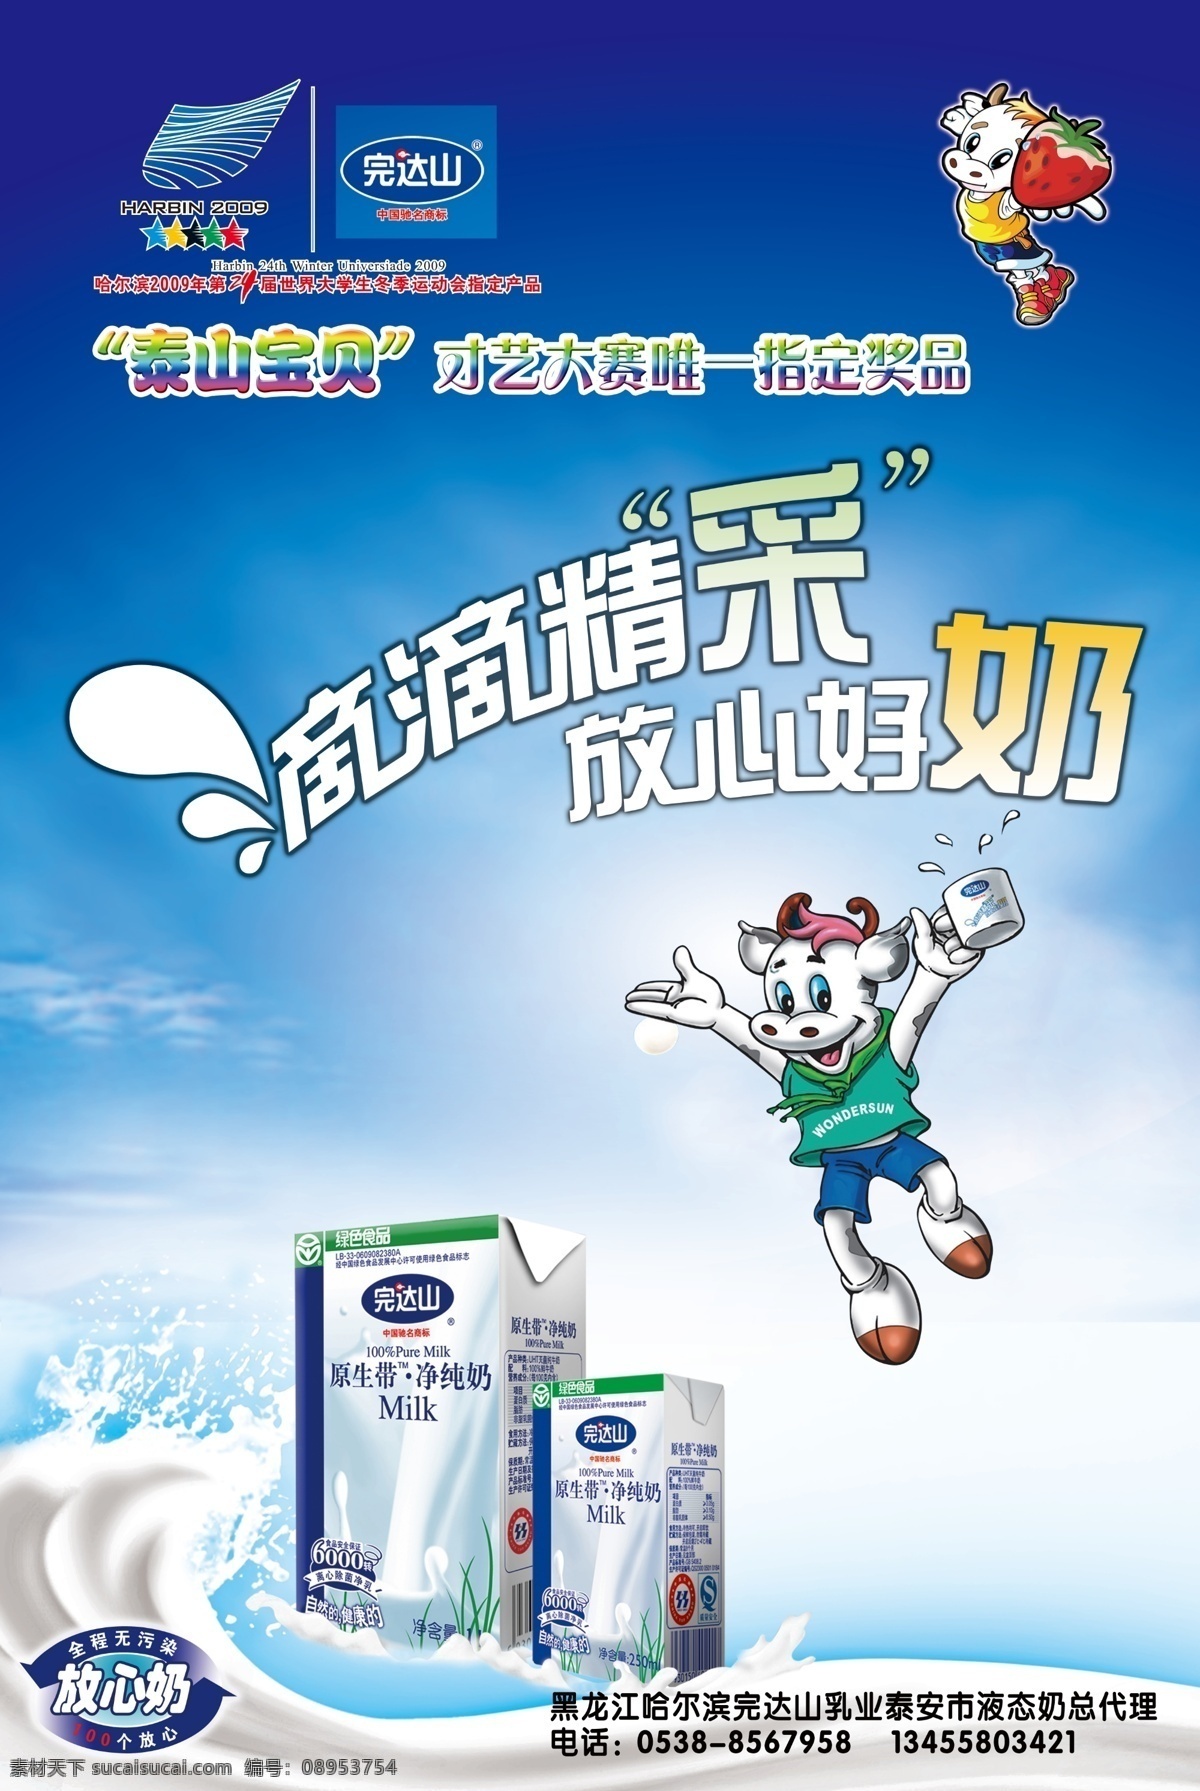 完达山纯净奶 纯净奶 完达山 品牌 盒装牛奶 广告设计模板 源文件